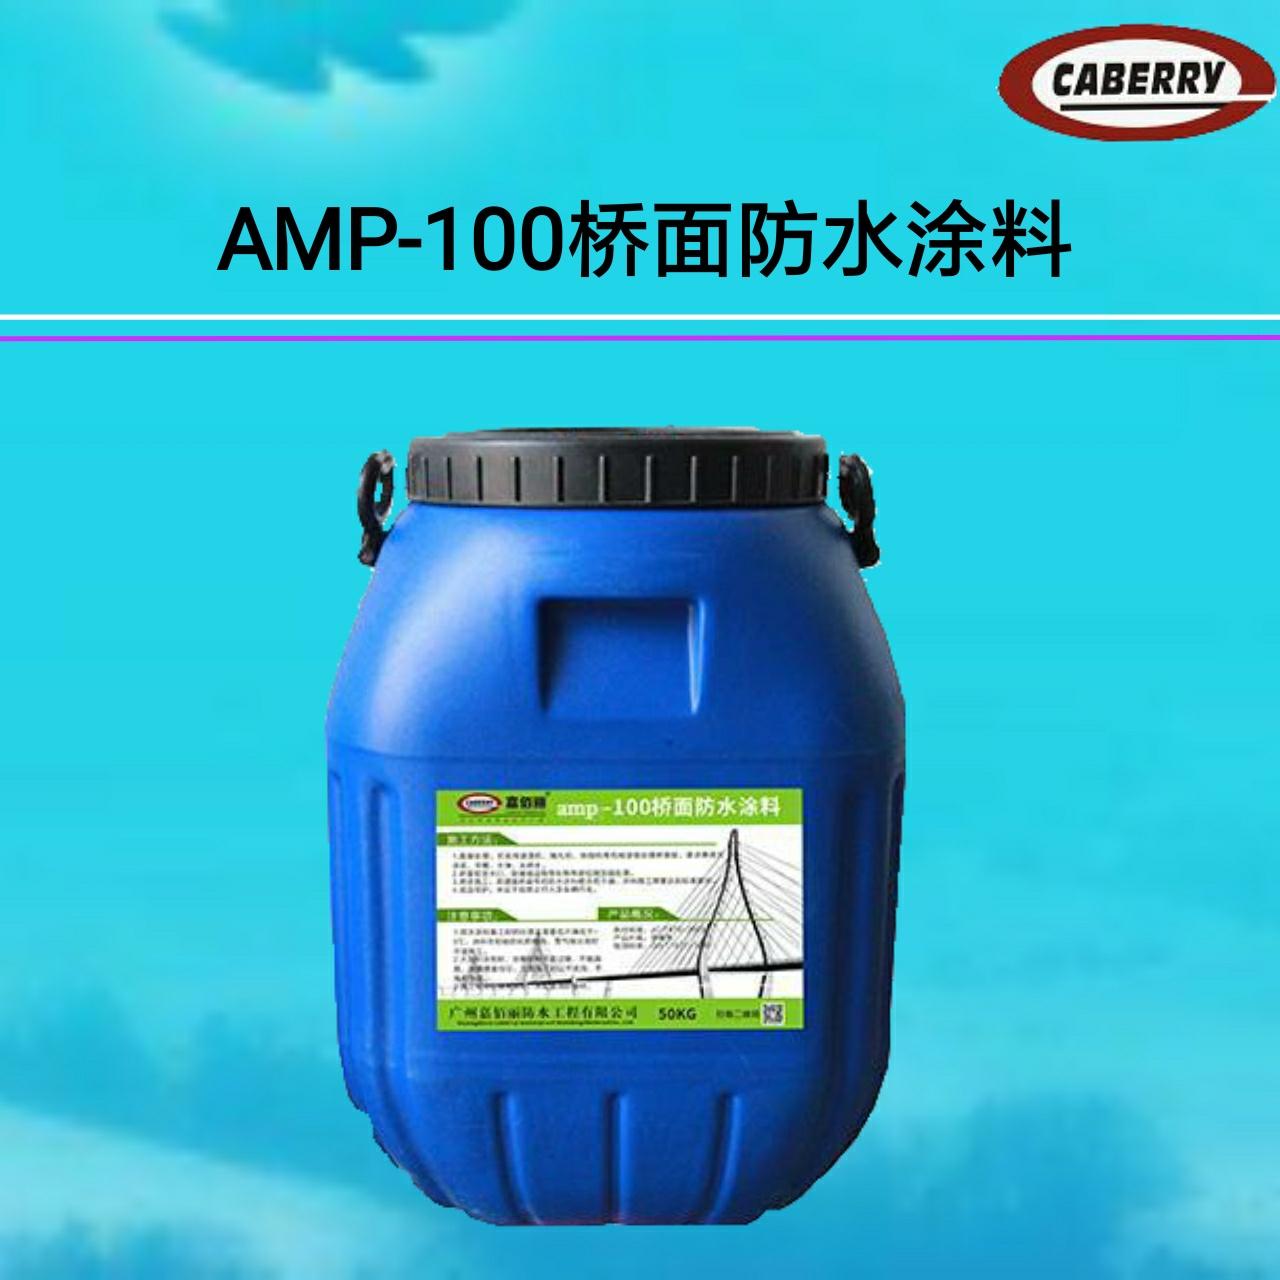 反应型桥面防水 道桥专用防水 AMP-100二阶反应型防水涂料 生产制造商示例图1